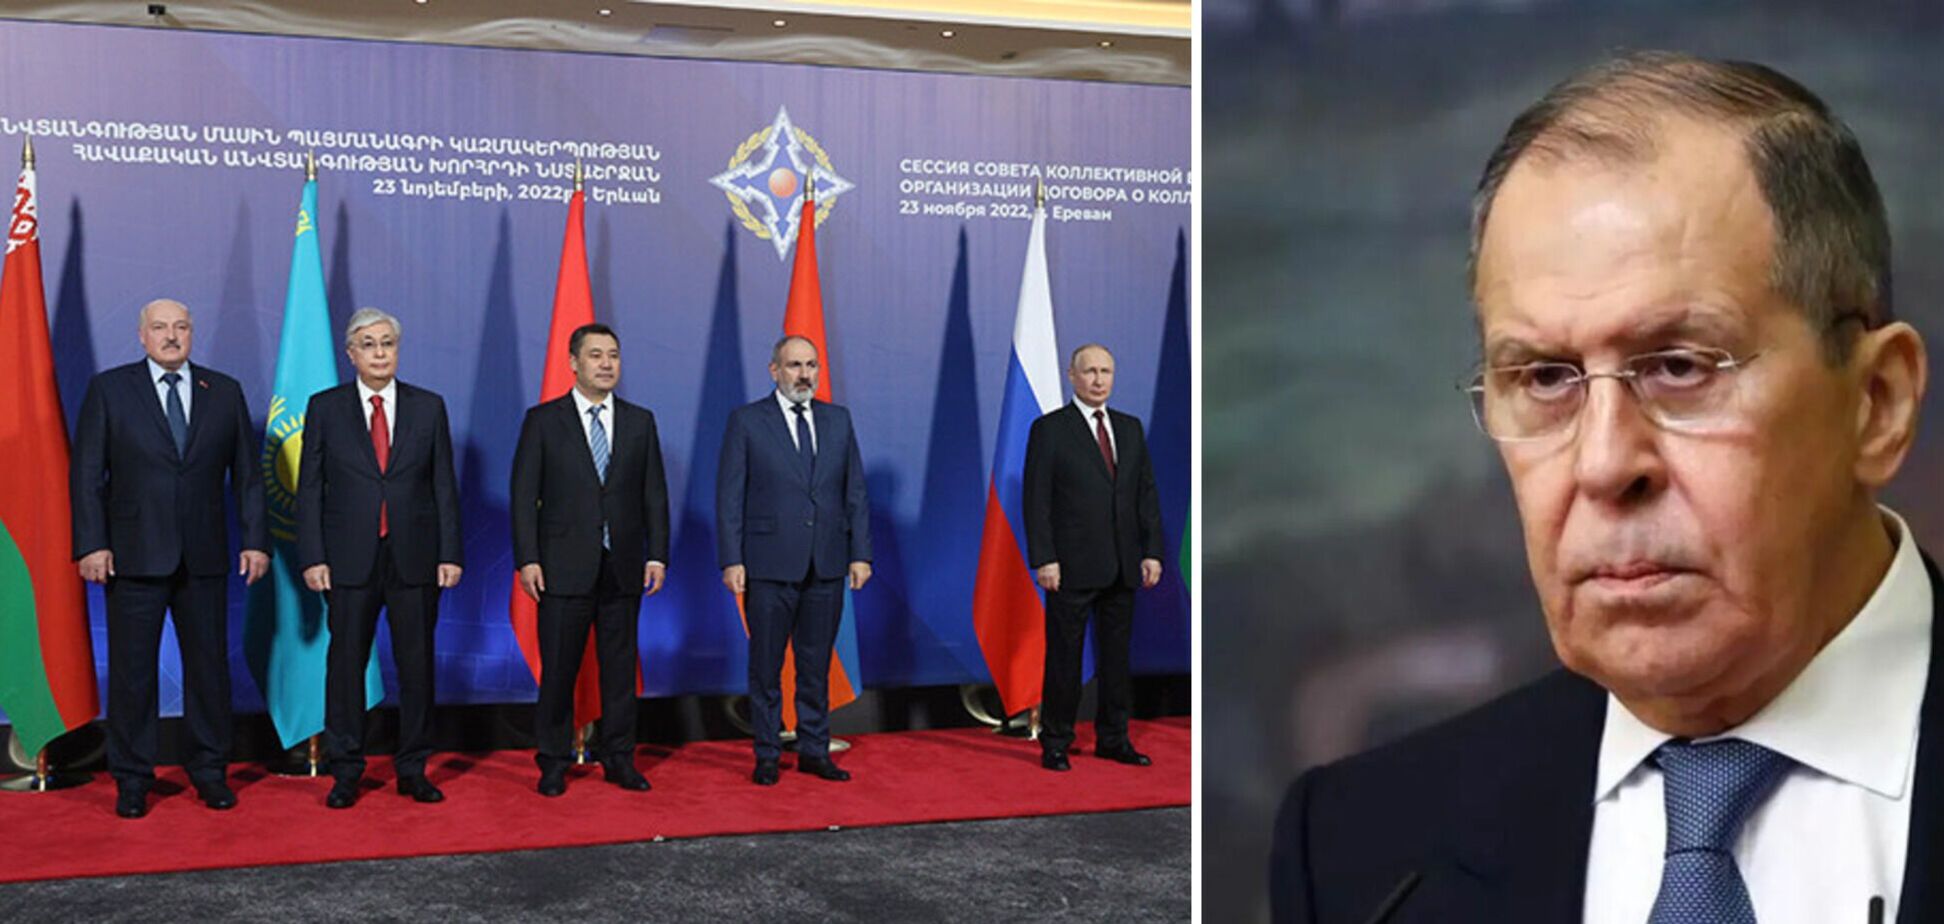 Лавров знову визвірився на журналістів під час групового фото після засідання ОДКБ. Відео